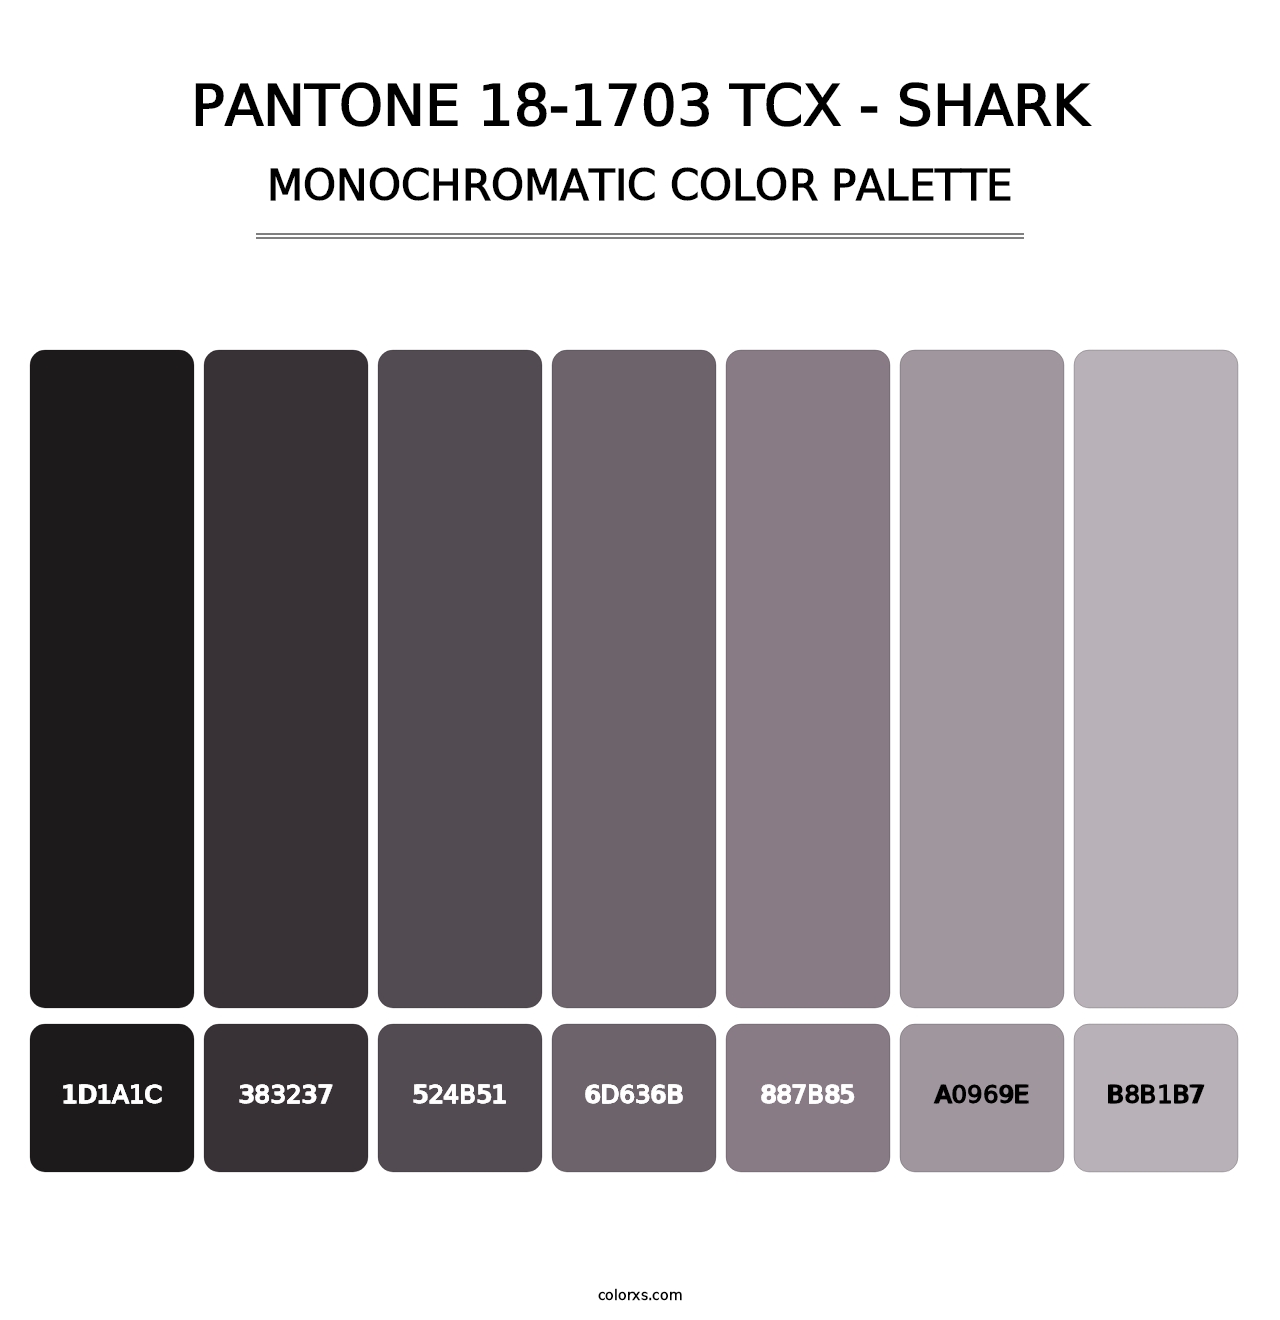 PANTONE 18-1703 TCX - Shark - Monochromatic Color Palette